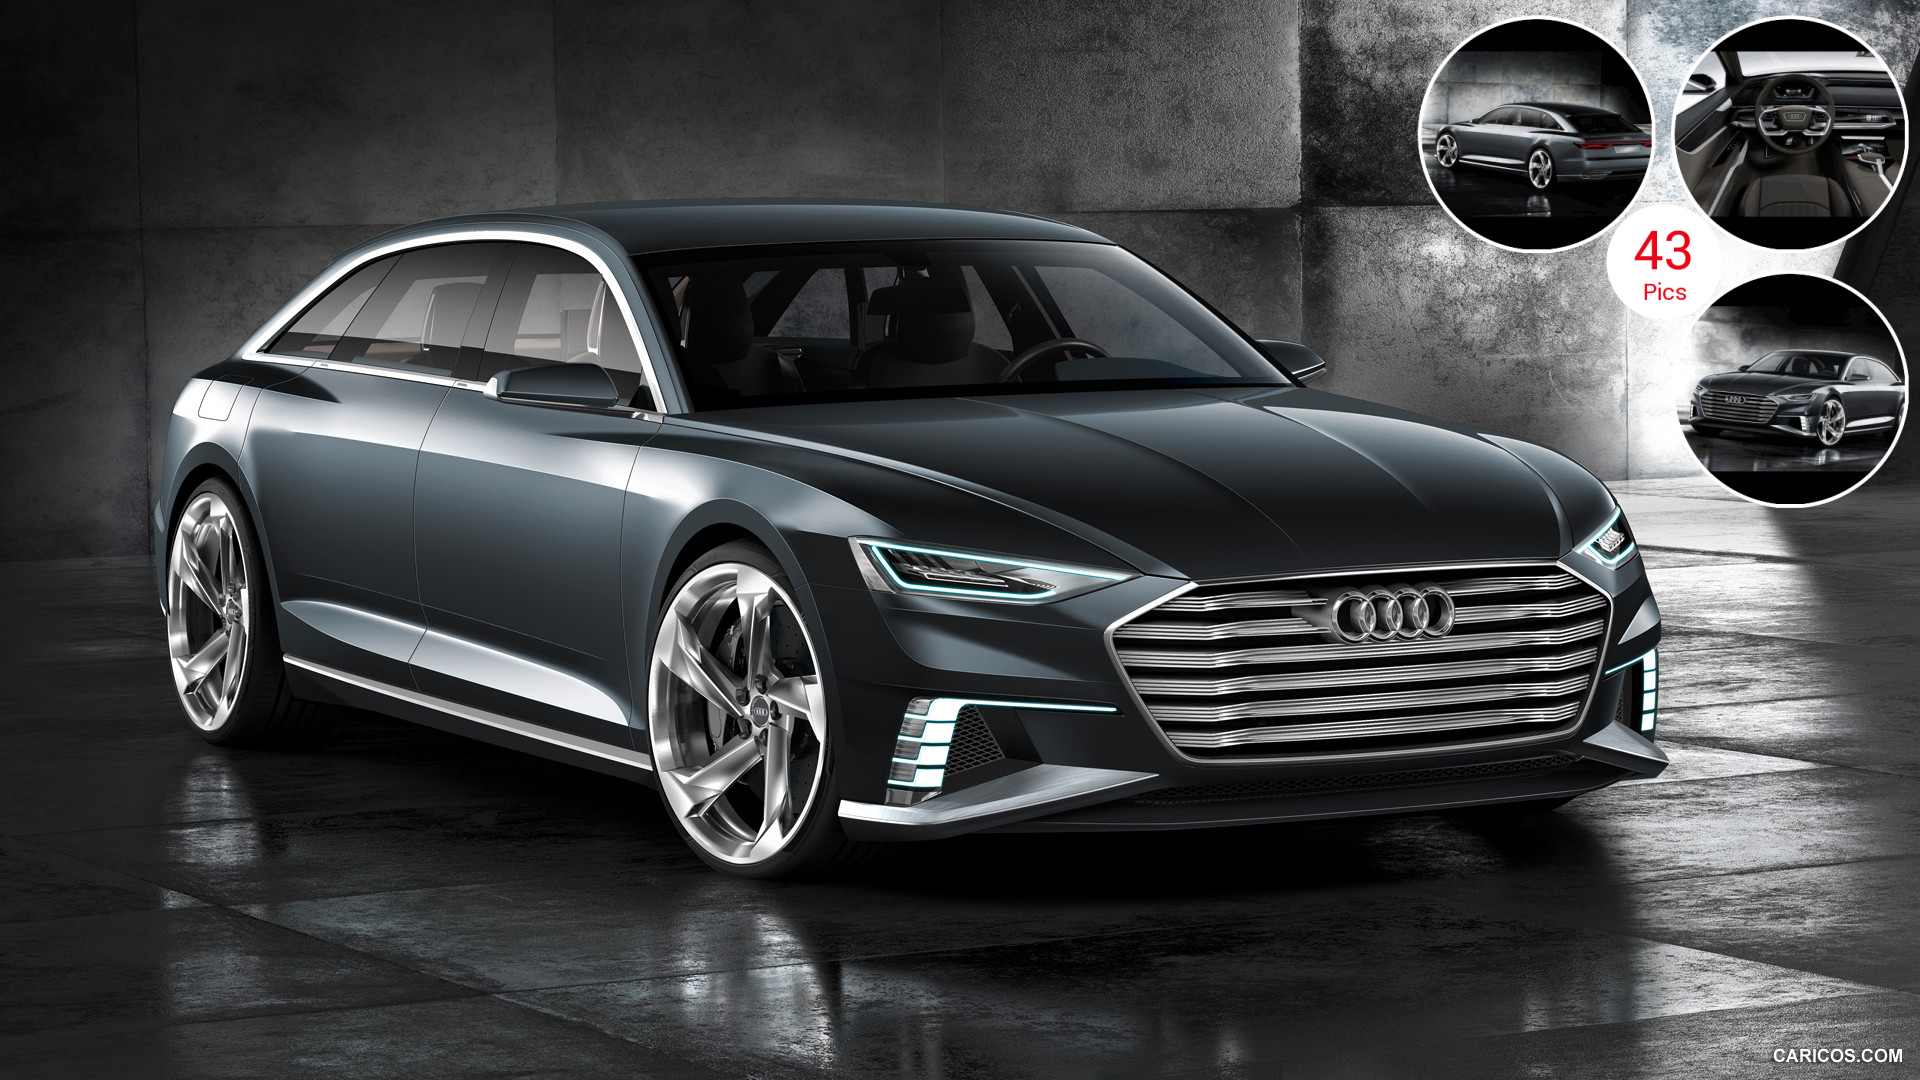 2015 Audi Prologue Avant Concept | Caricos.com